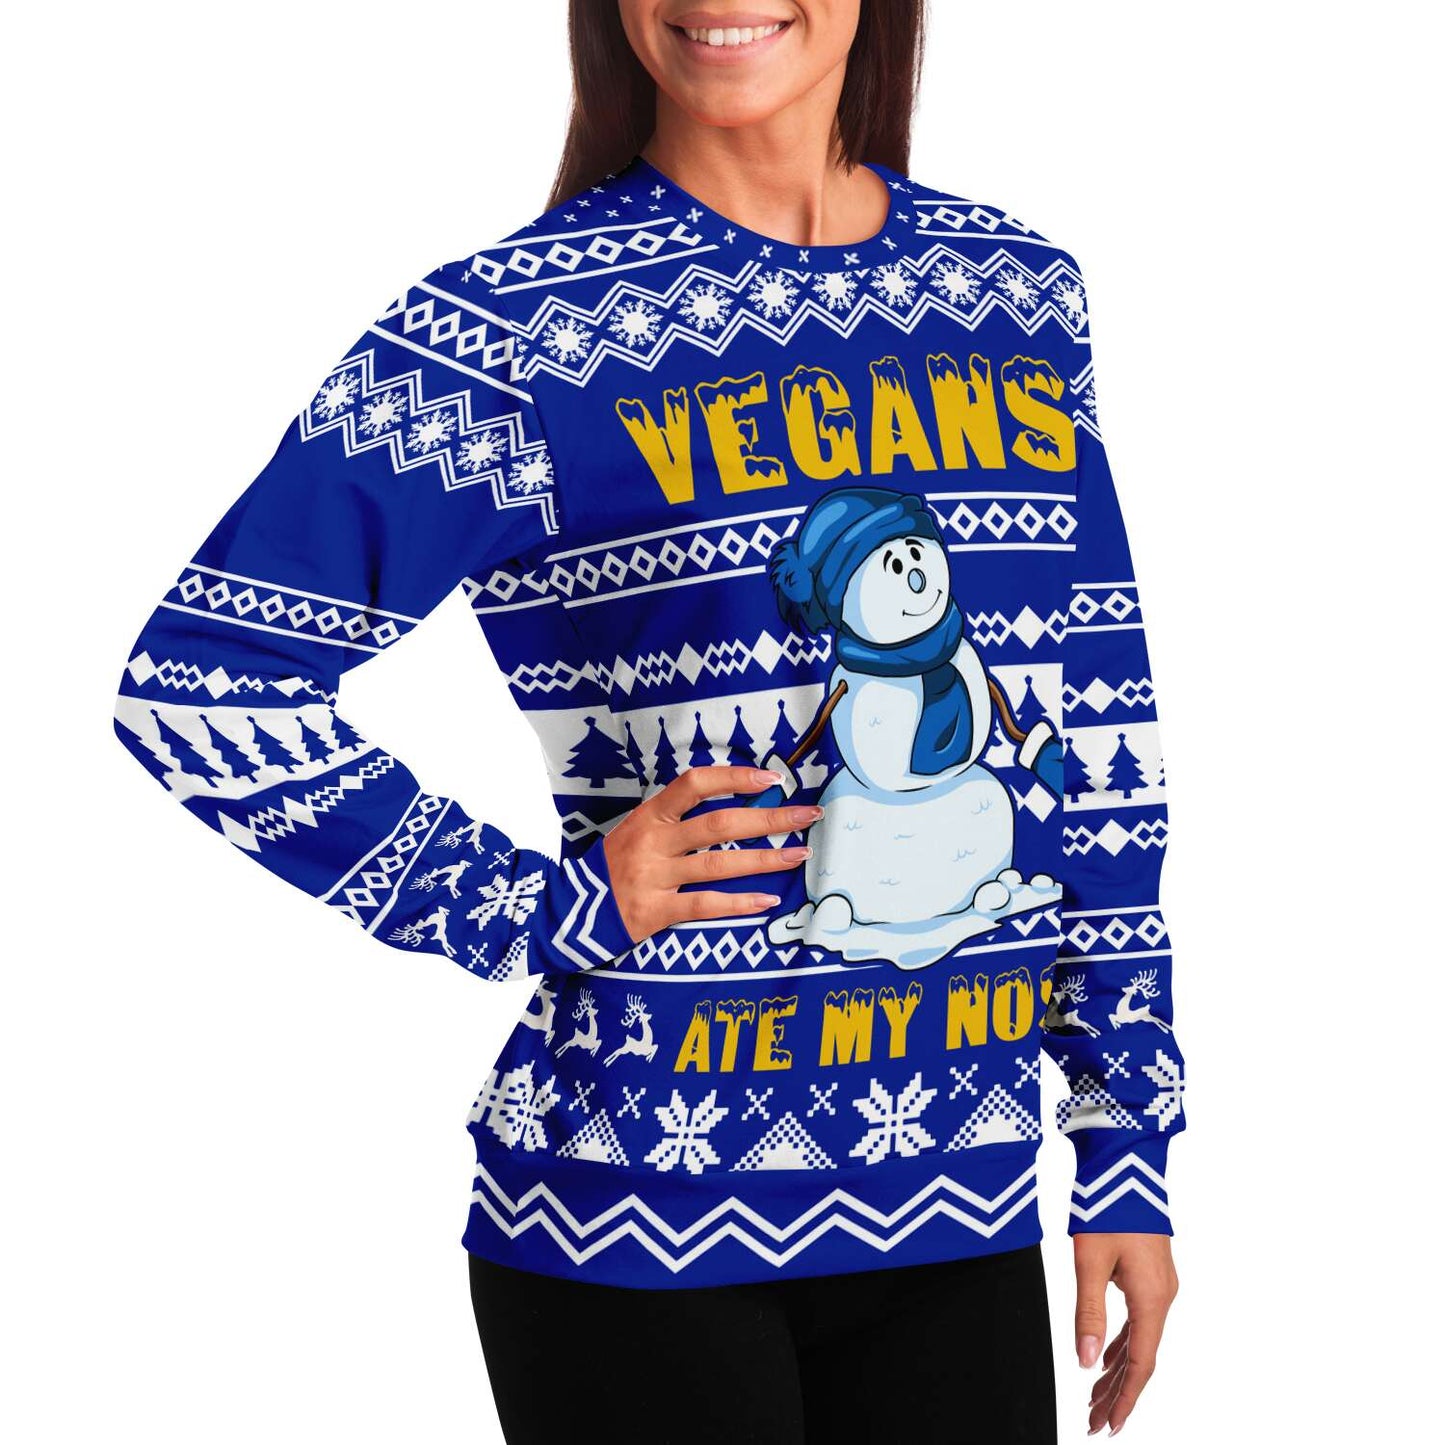 Vegan Humor Sweatshirt